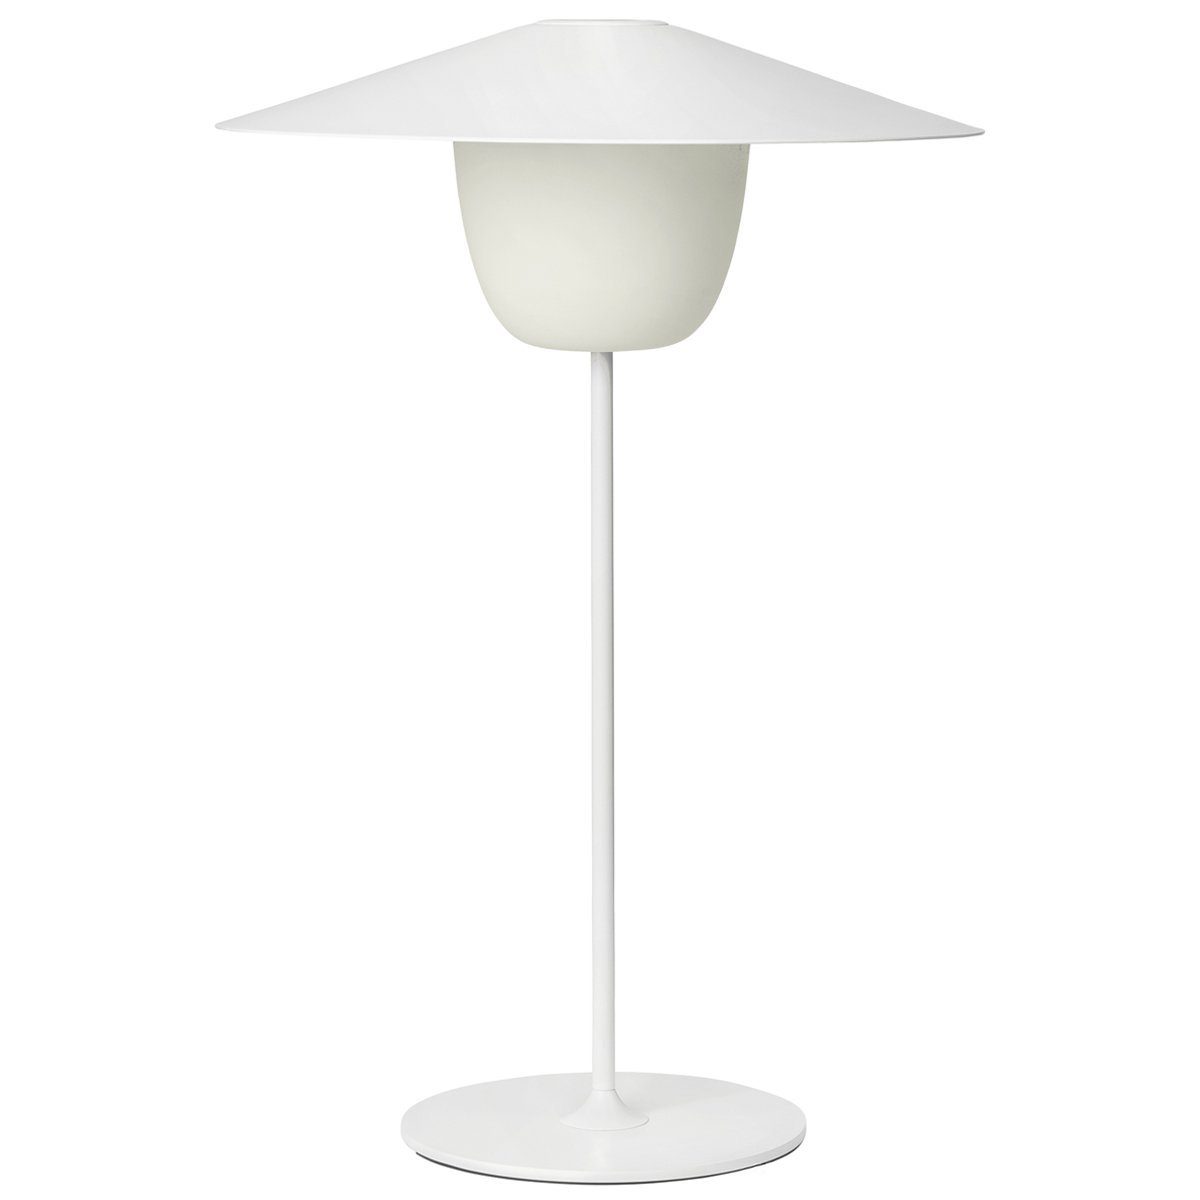 BLOMUS LED Tischleuchte »Ani Lamp LARGE Weiß für Indoor & Outdoor;  kabellos, akkubetrieben, dimmbar; Drei Funktionsweisen« online kaufen | OTTO